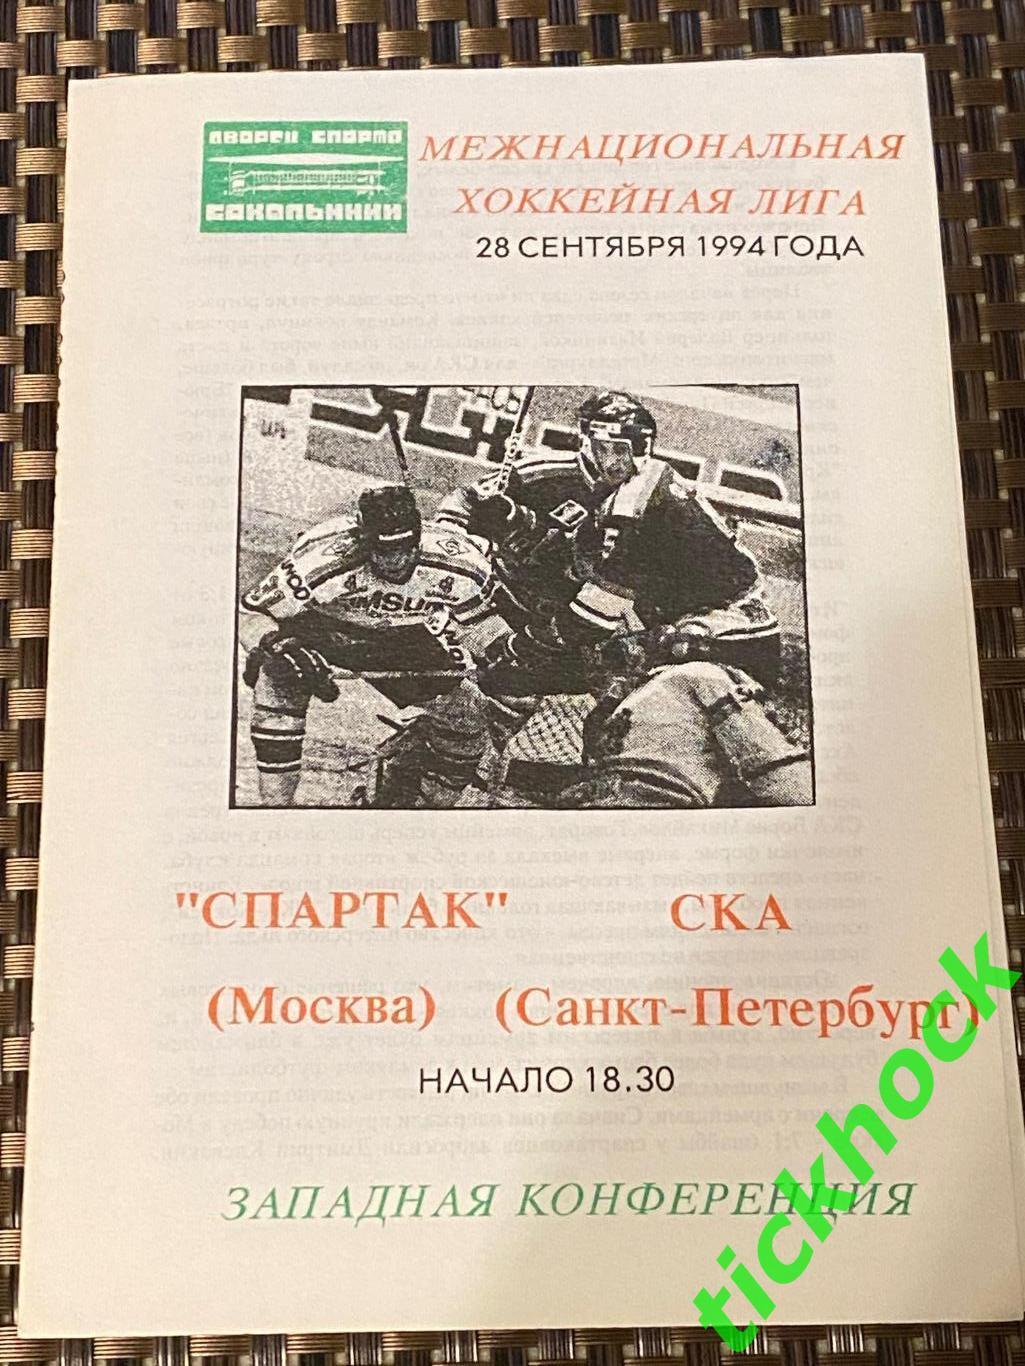 ХК Спартак Москва - ХК СКА Санкт-Петербург 28.09.1994 программа --SY